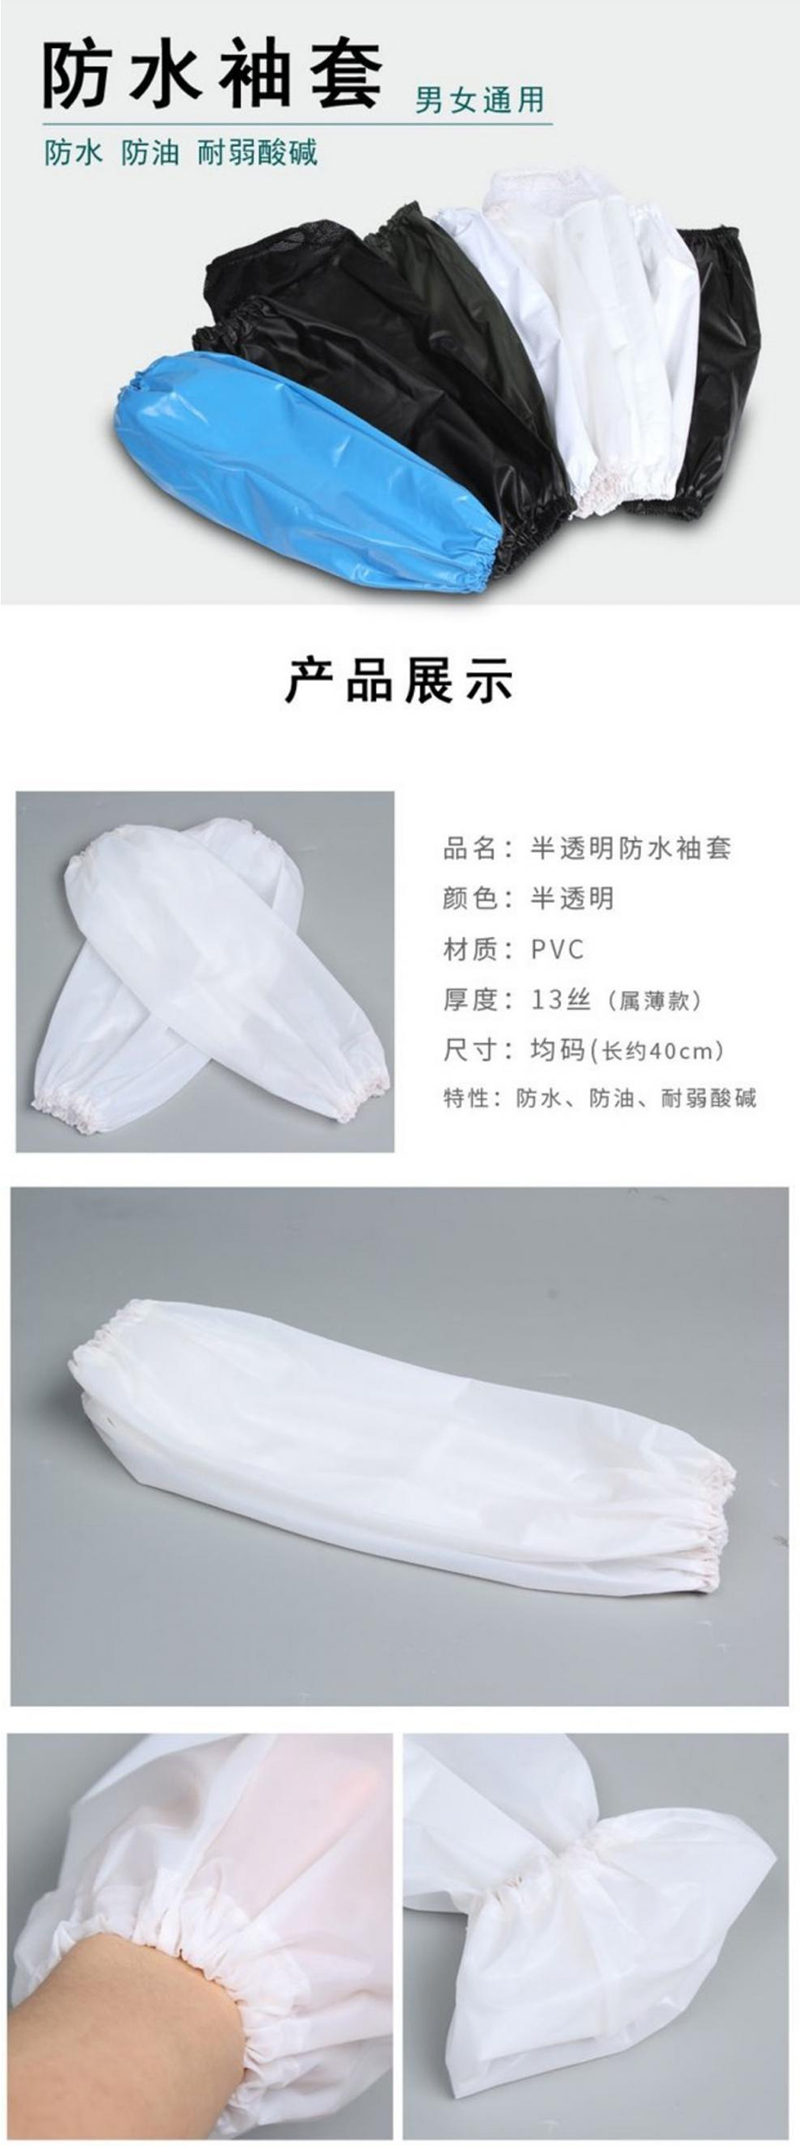 PVC防水袖套白色半透明